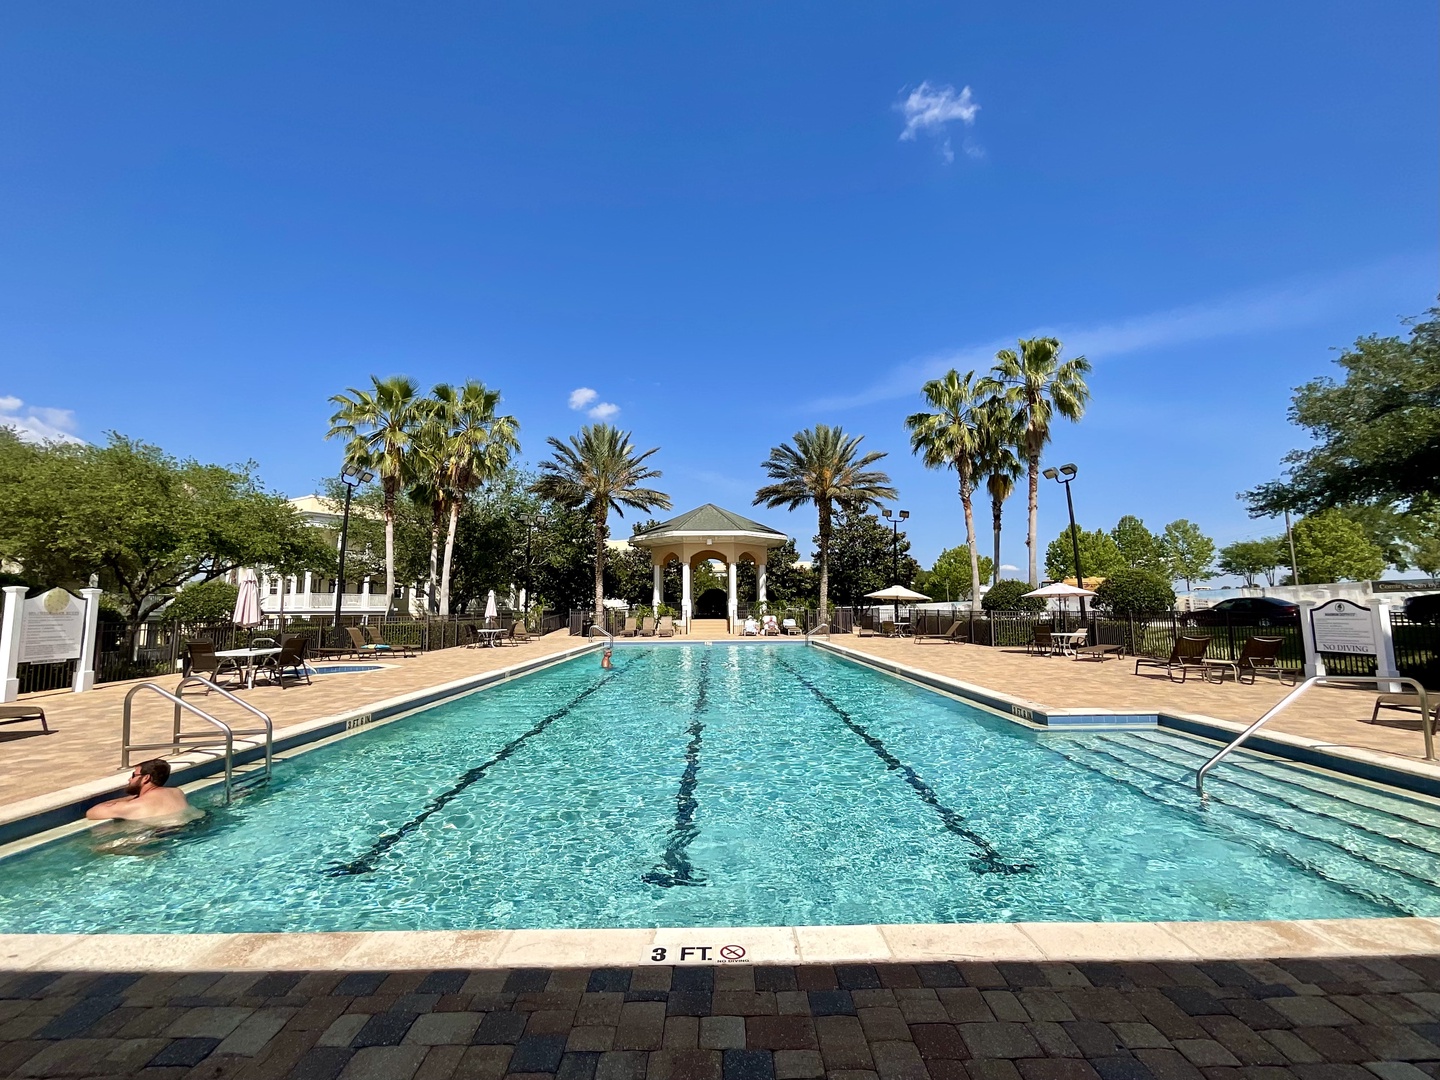 Reunion Resort - heated pools, hot tub and kids splash pools